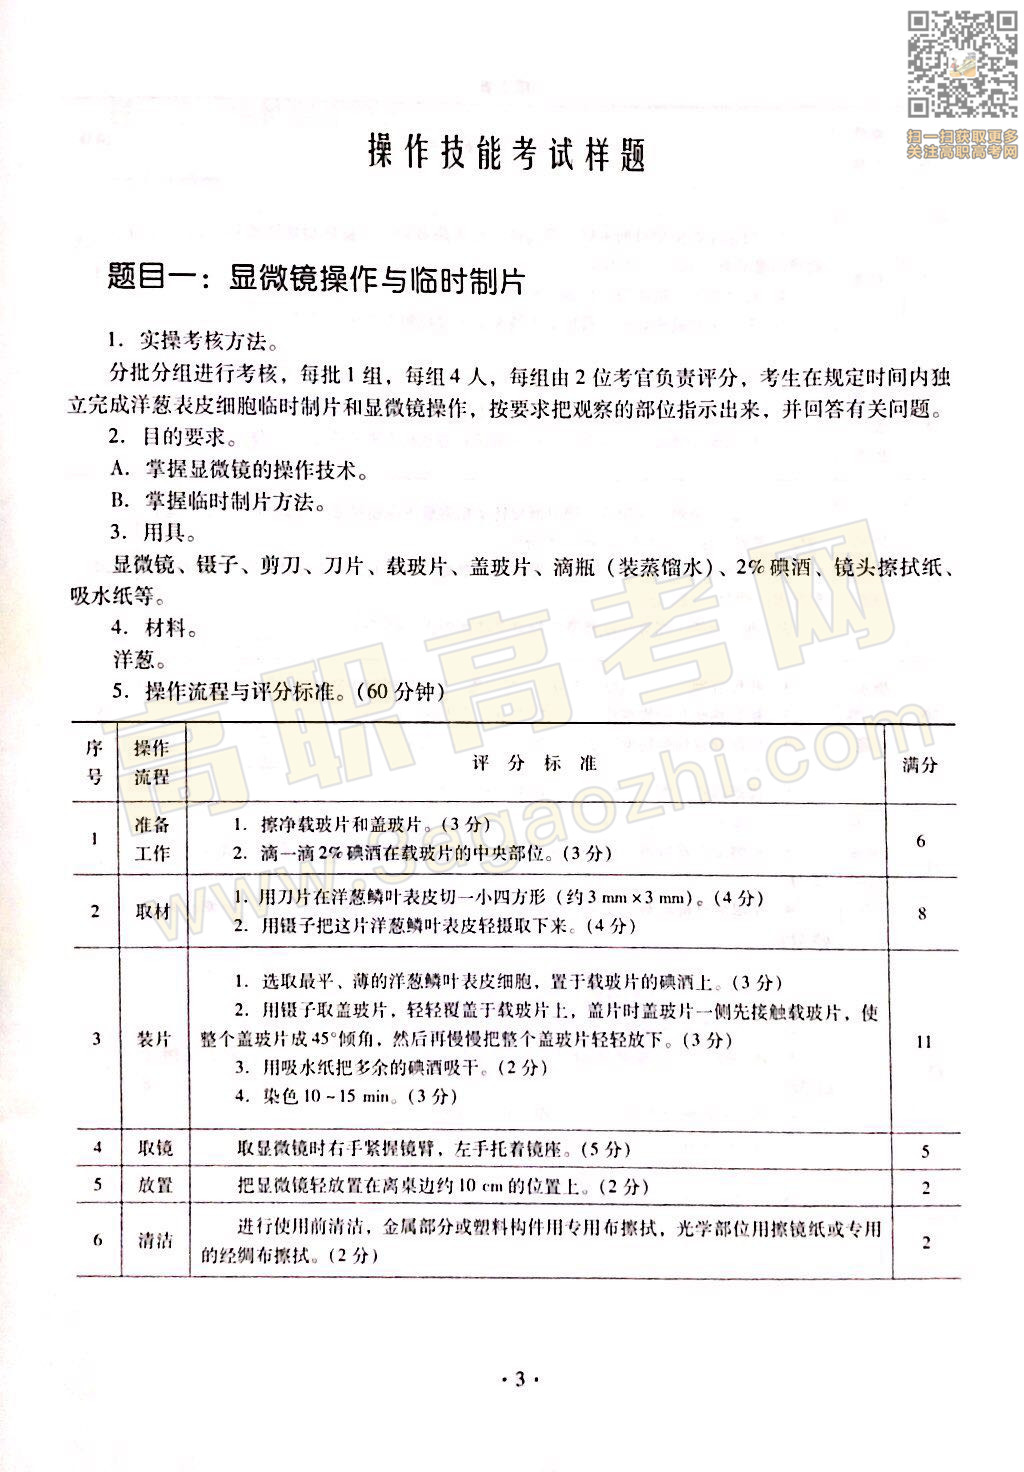 生物技术基础证书,2020年广东中职技能课程考试大纲及样题